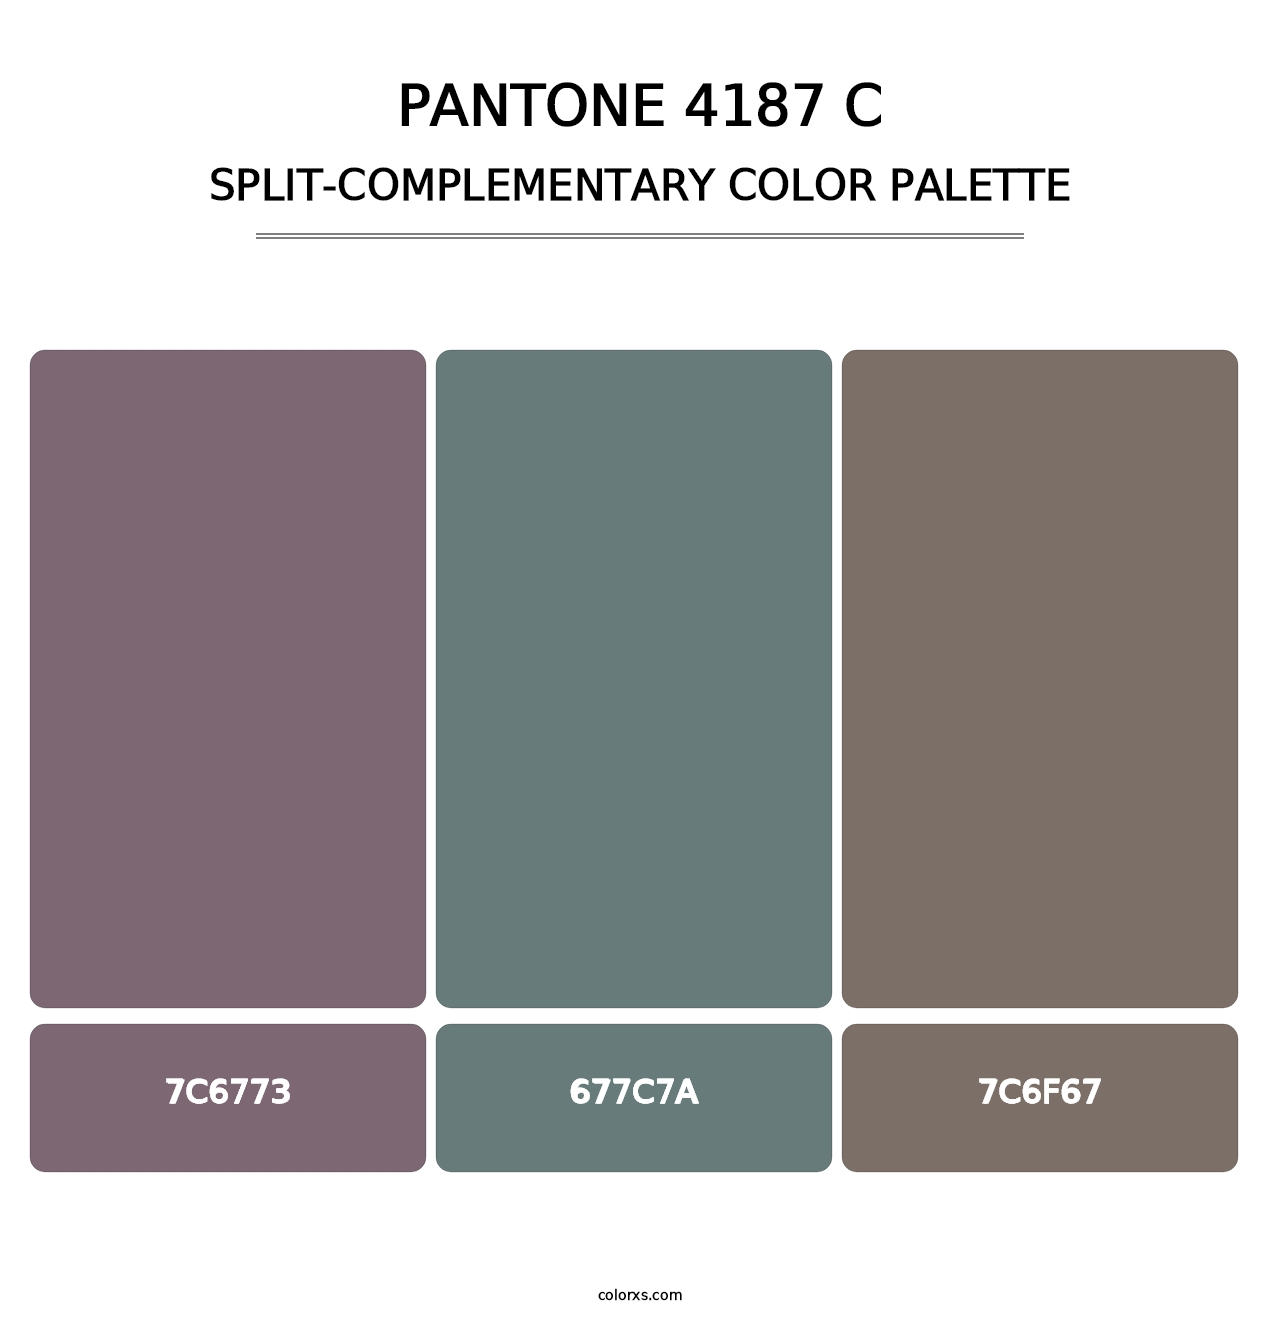 PANTONE 4187 C - Split-Complementary Color Palette